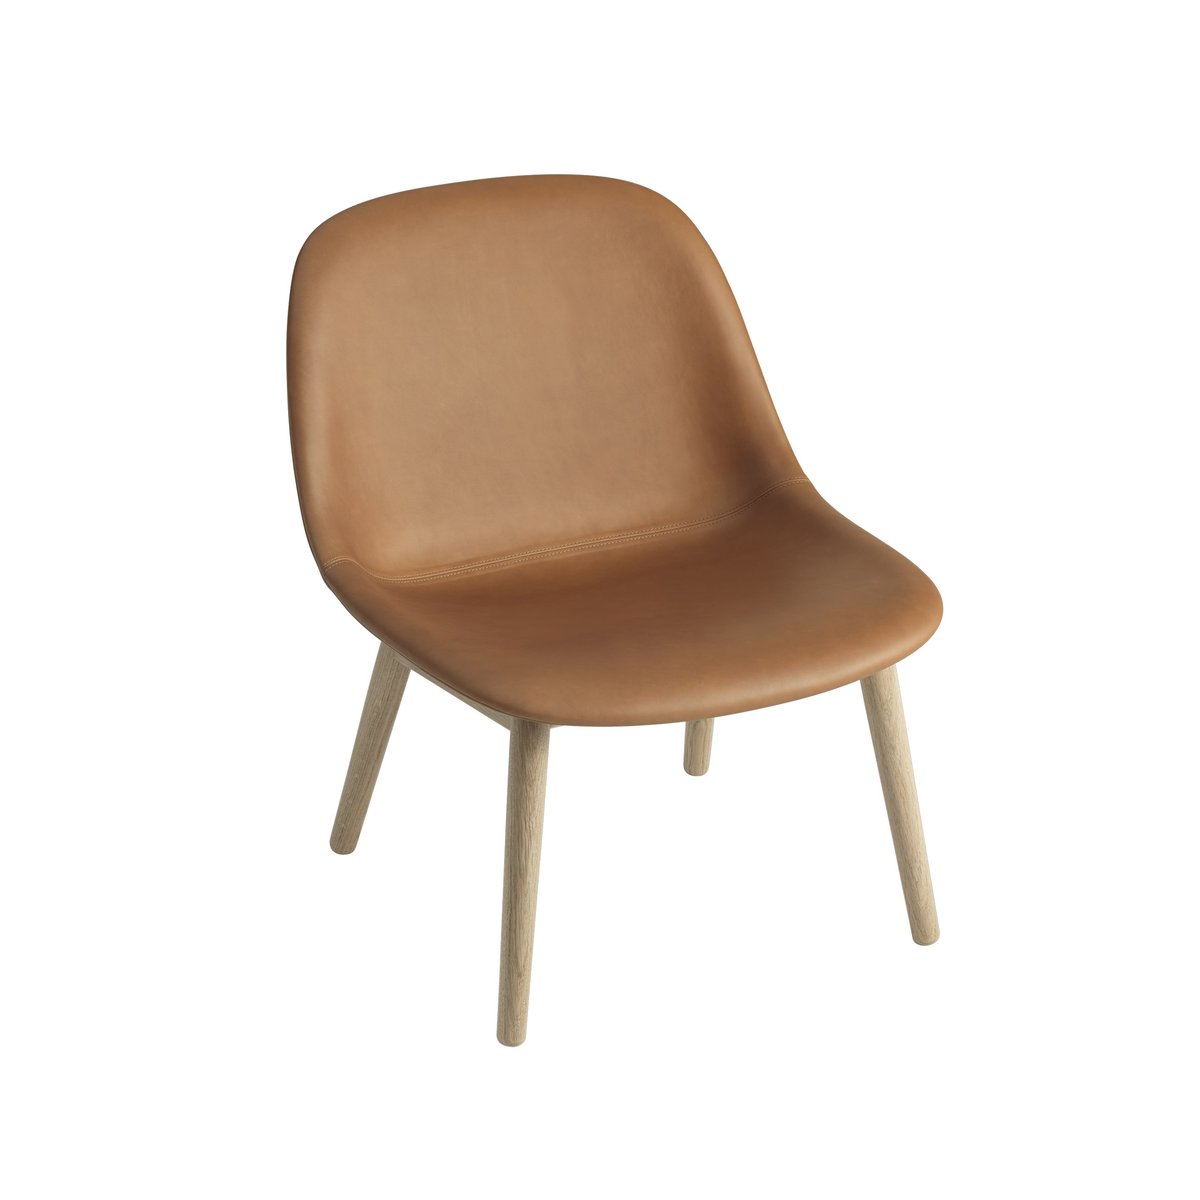 Muuto Fiber Lounge stoel met eikenhouten poten Refine leather cognac